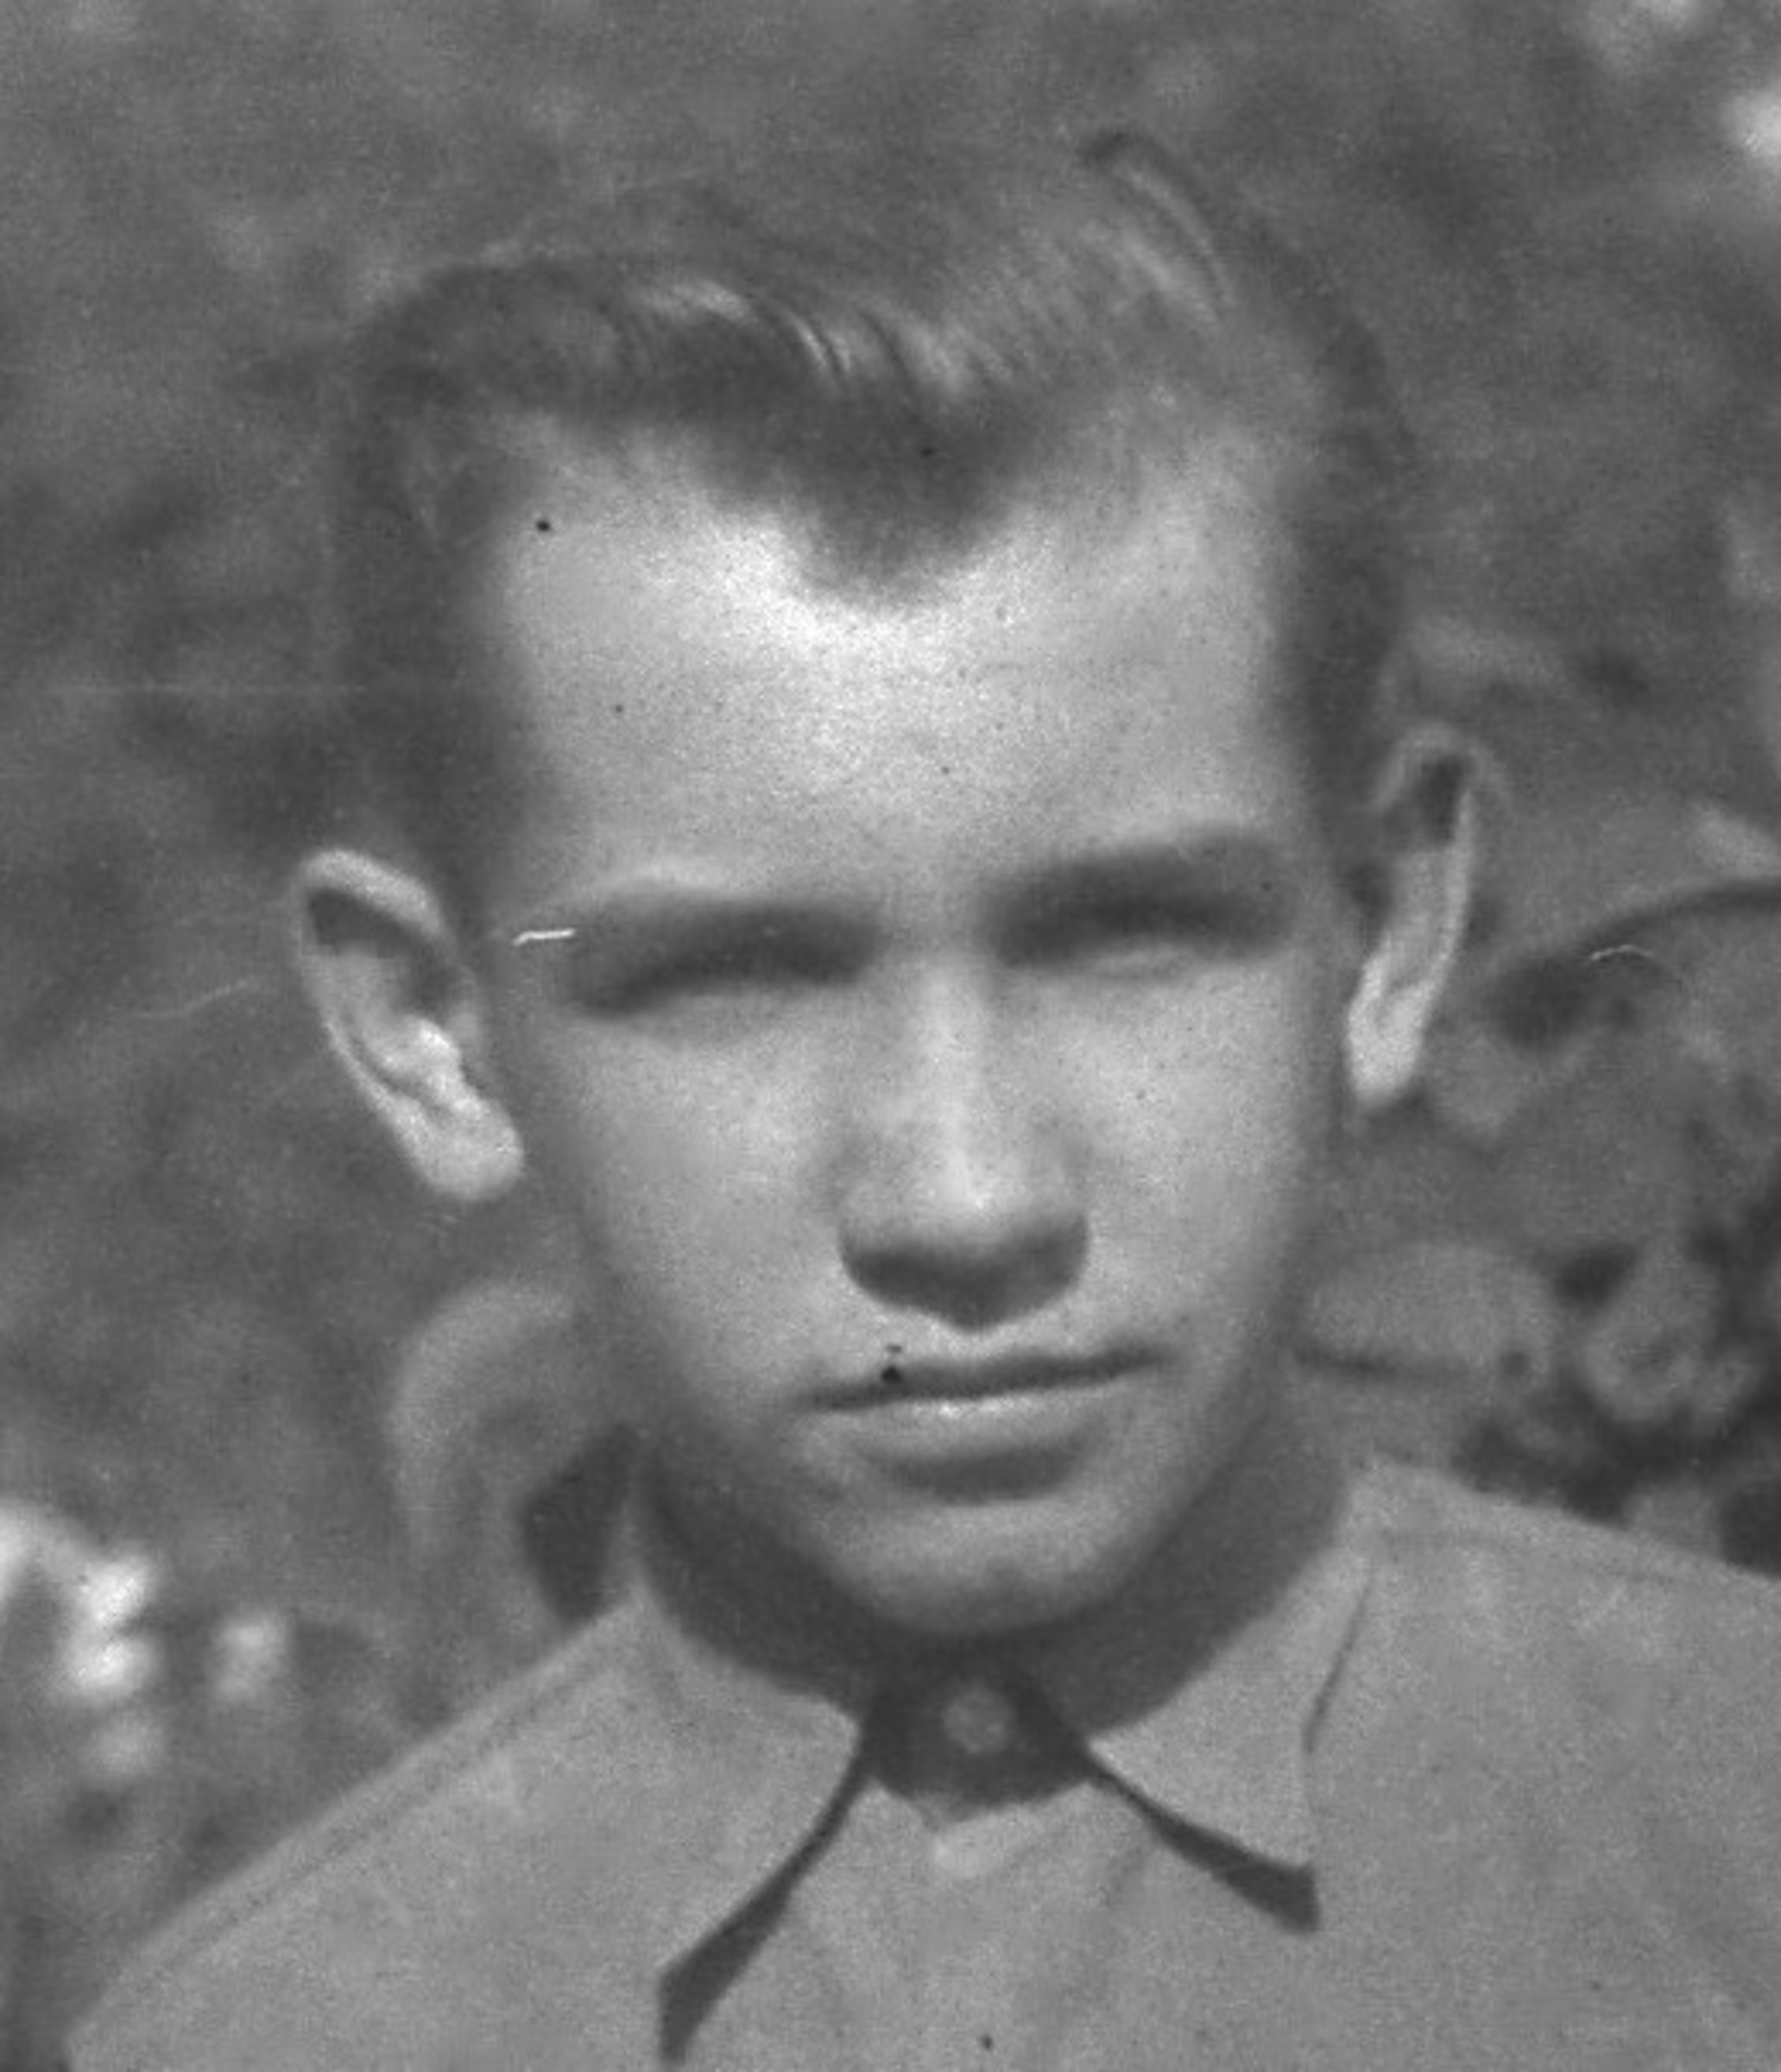 1952 - portrait photo